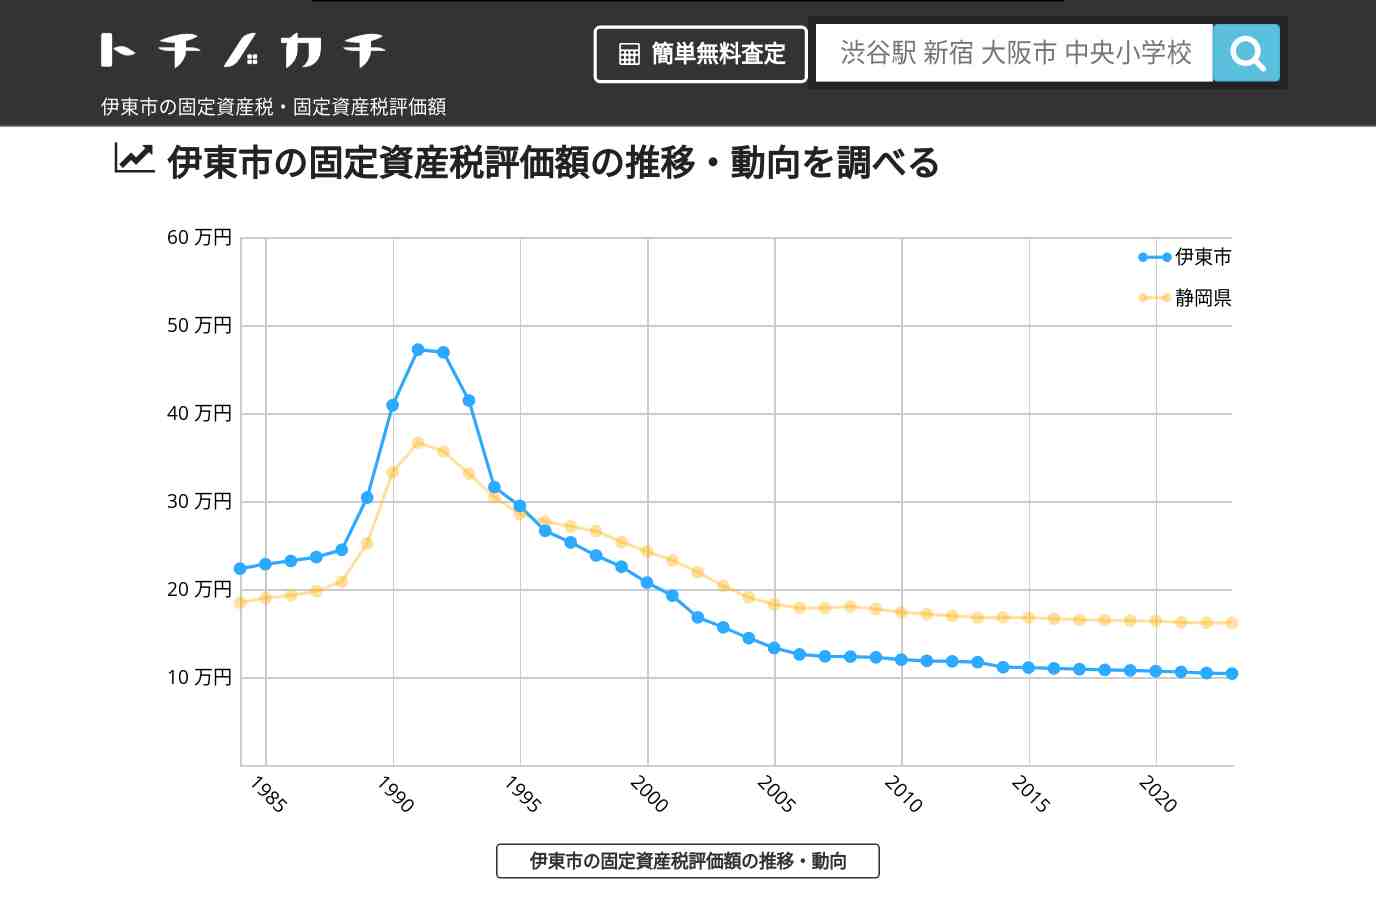 富戸小学校(静岡県 伊東市)周辺の固定資産税・固定資産税評価額 | トチノカチ